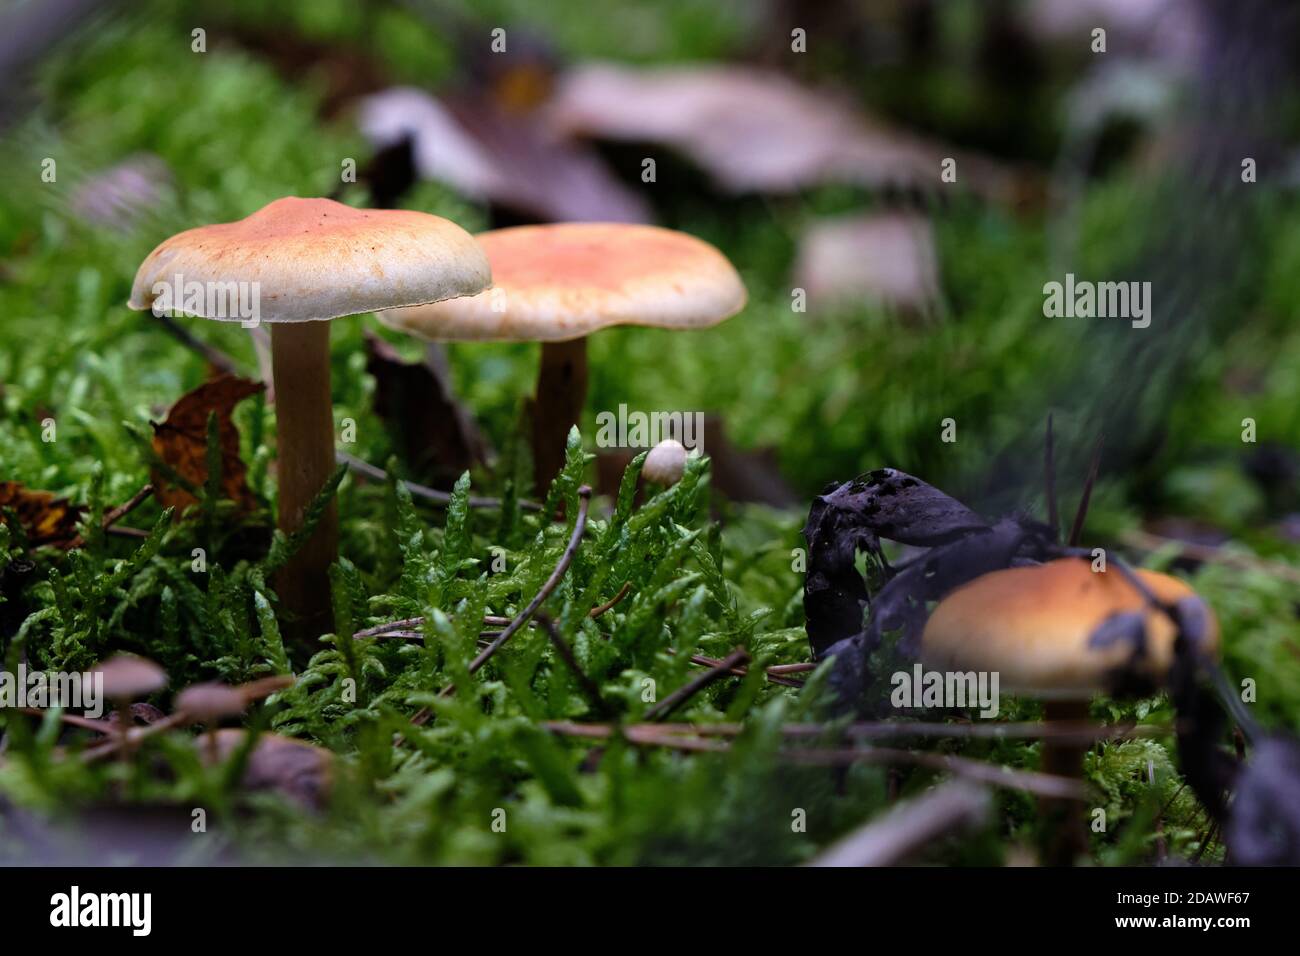 Nahaufnahme von cremebraunen Pilzen, Hebeloma sinapizans, Pilz auf Waldboden zwischen grünem Moos und Herbstblättern. Große Gingham Hut. Okt. 2020 Stockfoto